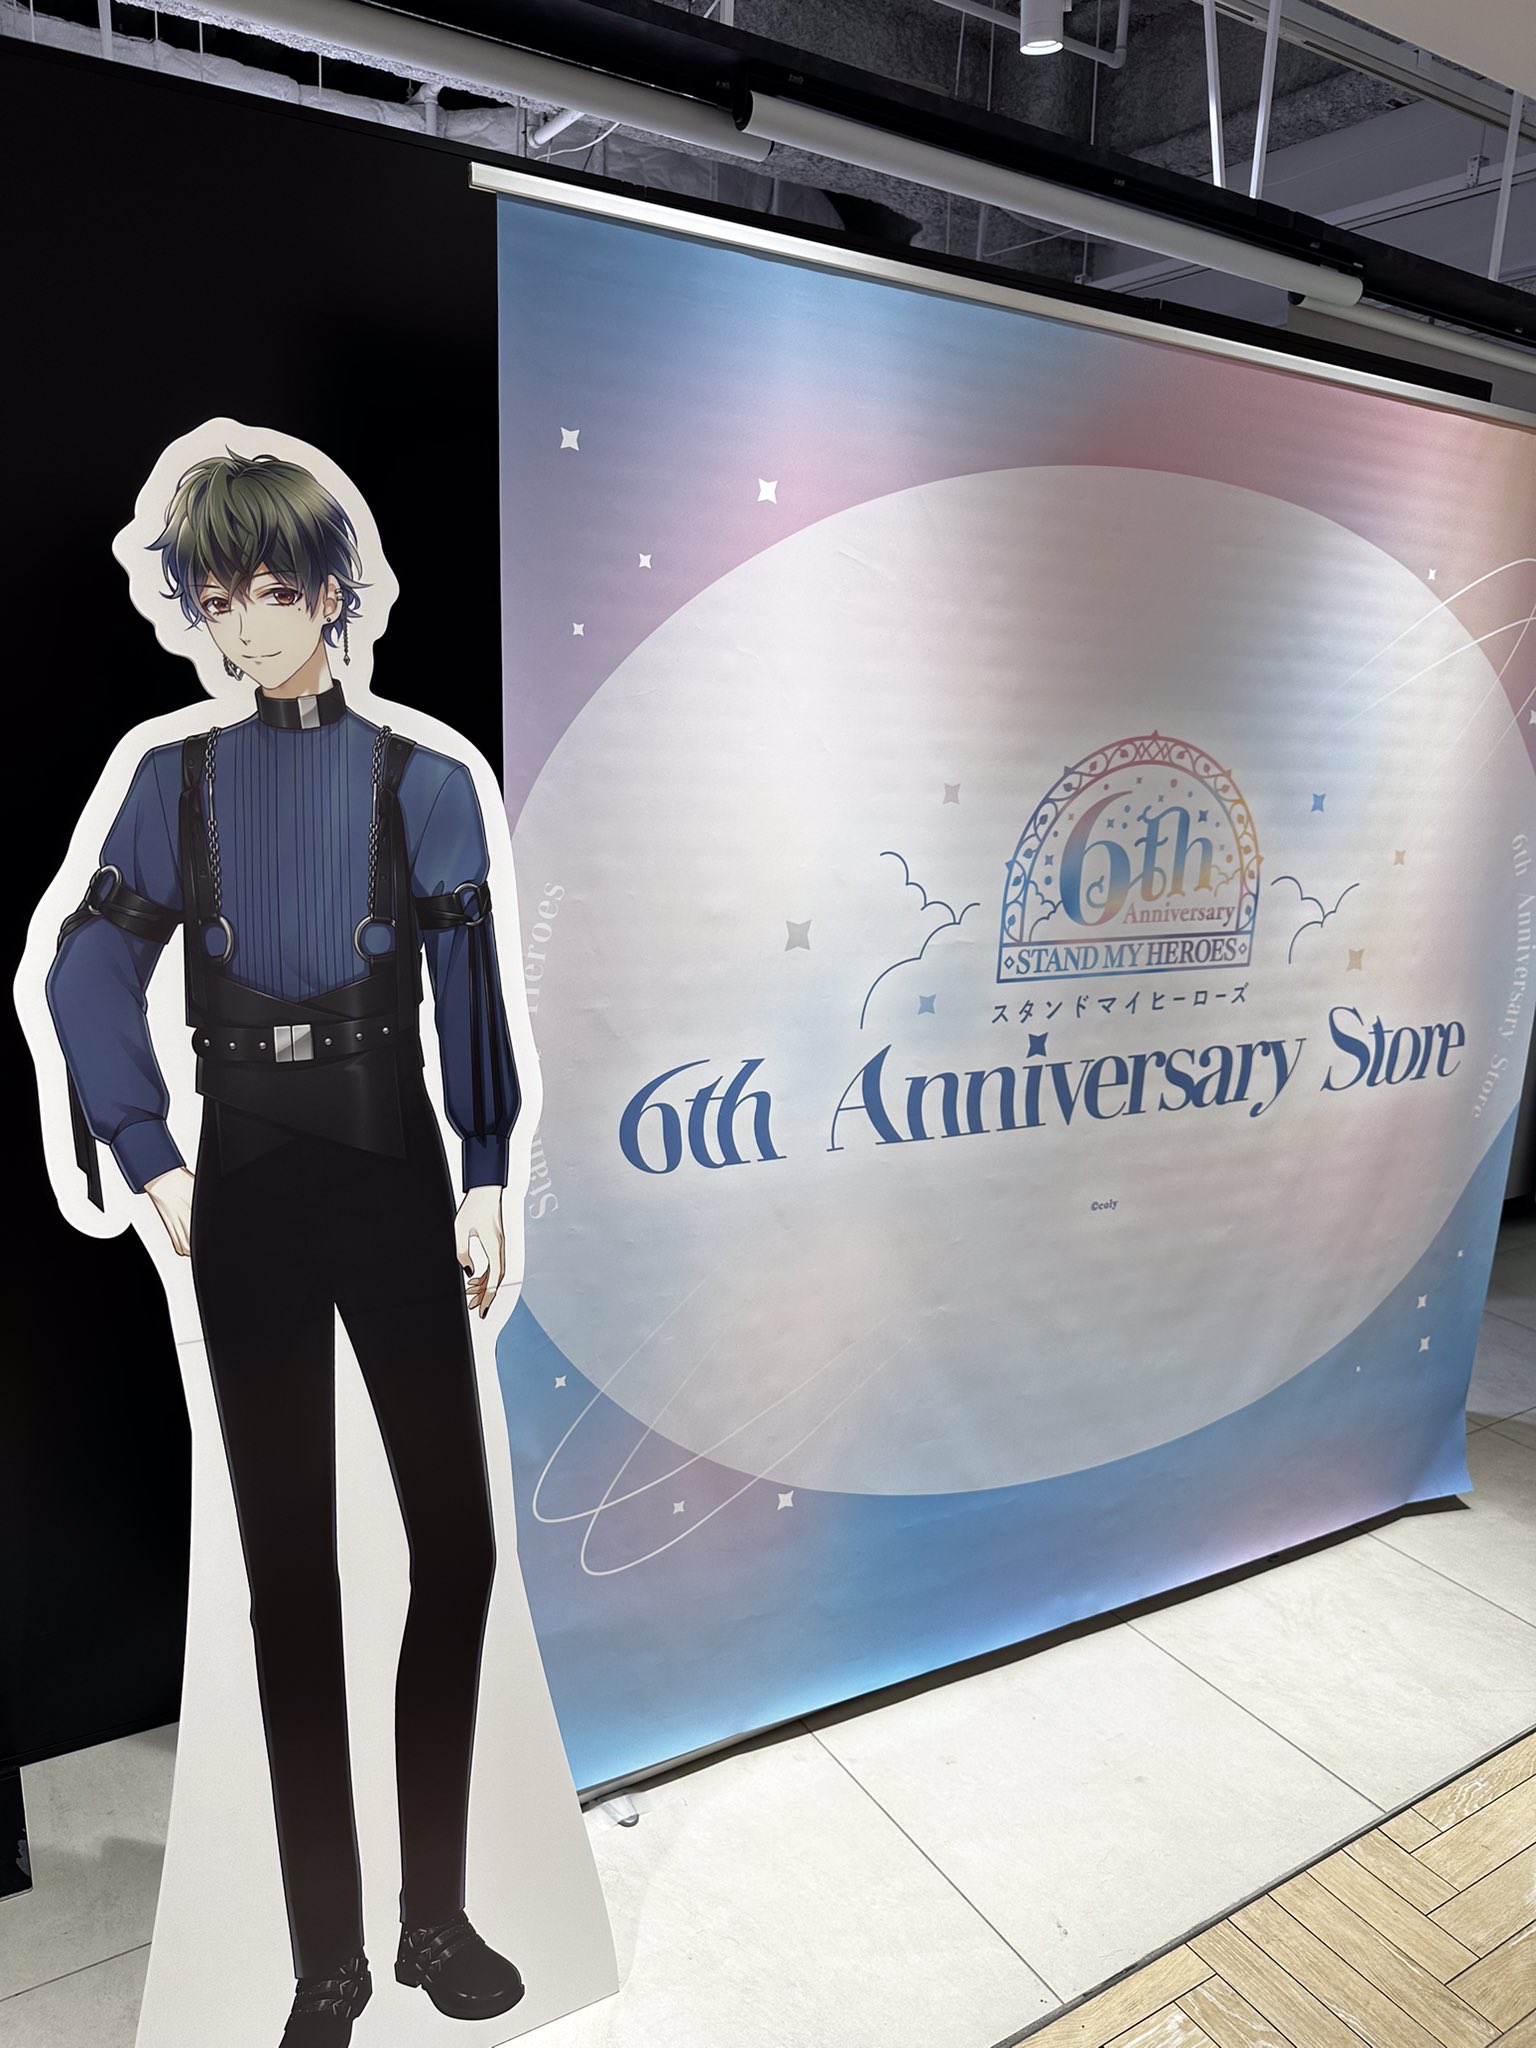 スタンドマイヒーローズ 6th Anniversary Store (@myhero_6thas) / Twitter